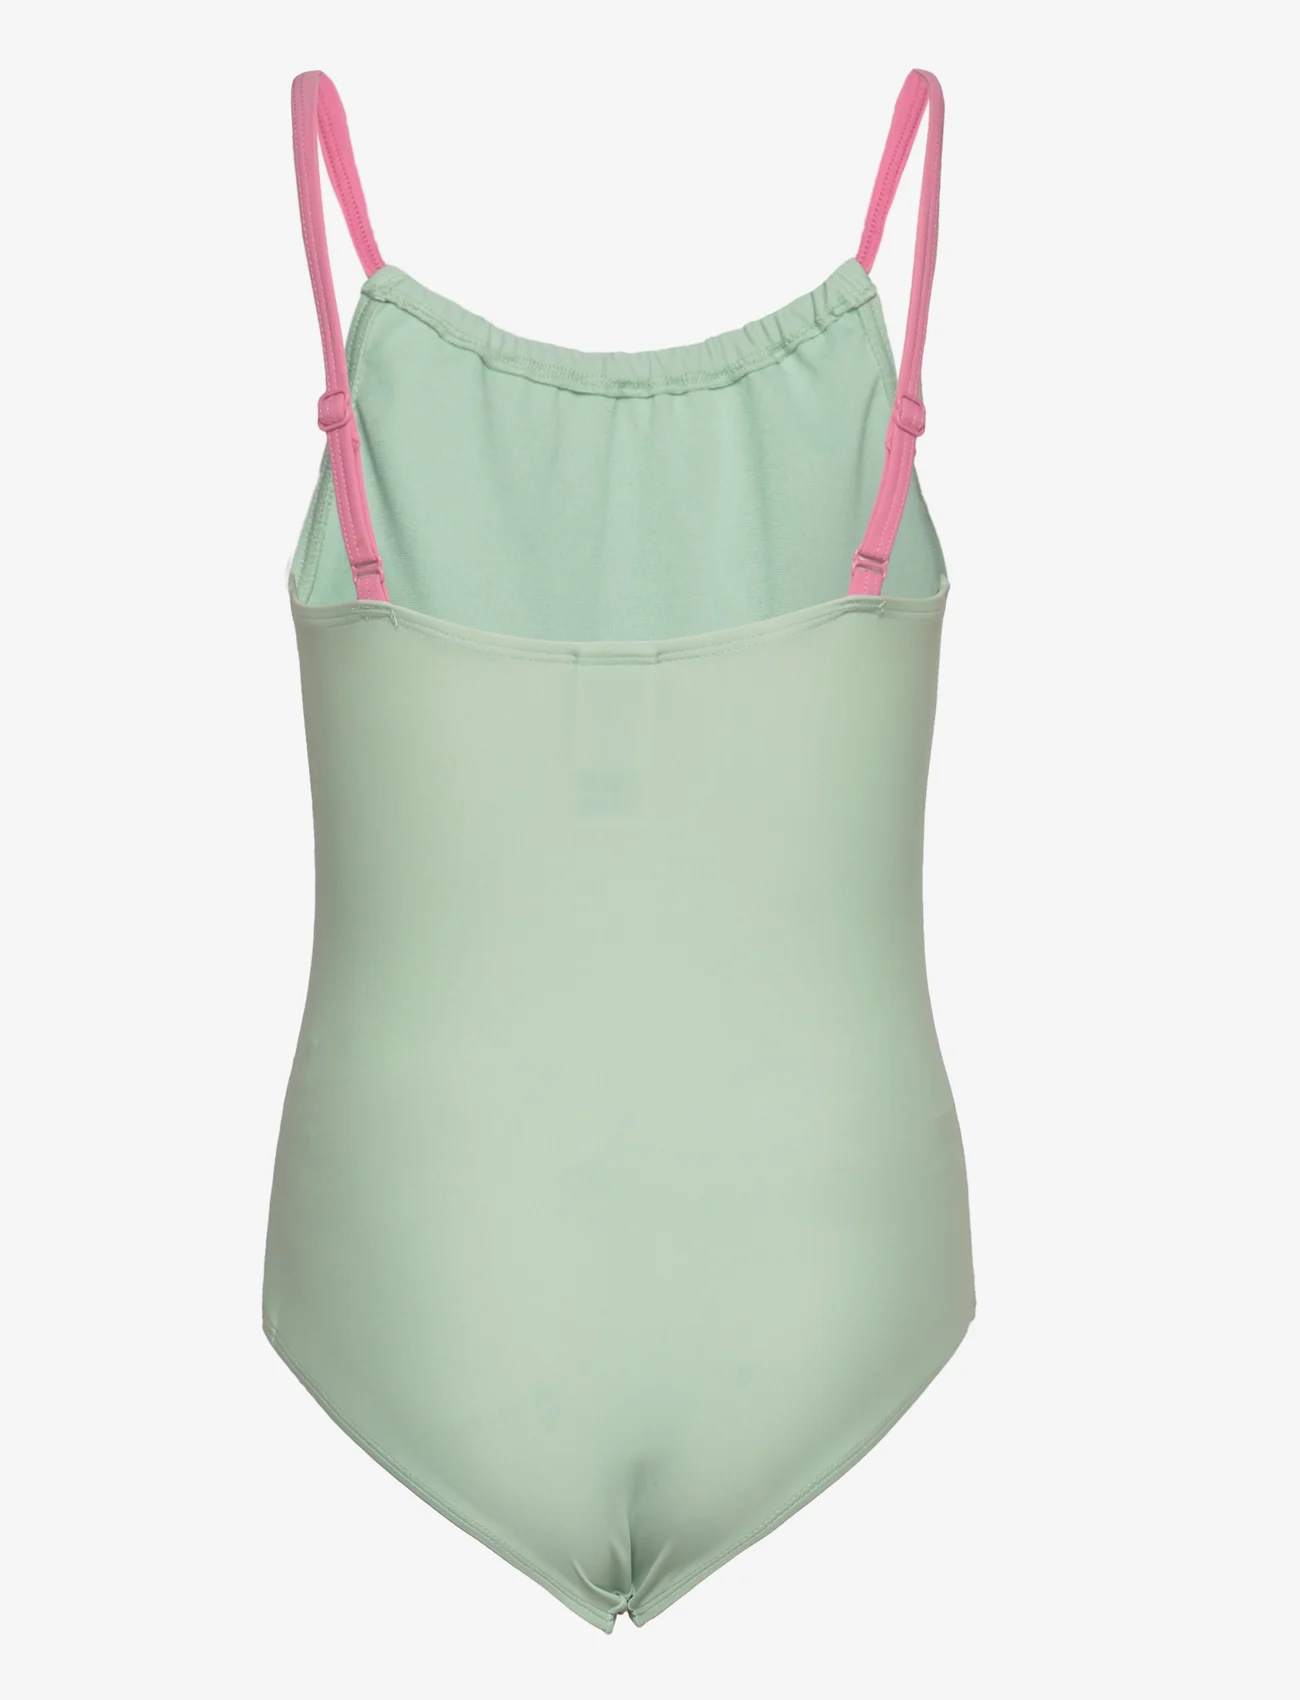 FILA - SINAH swimsuit - sommerschnäppchen - silt green - 1